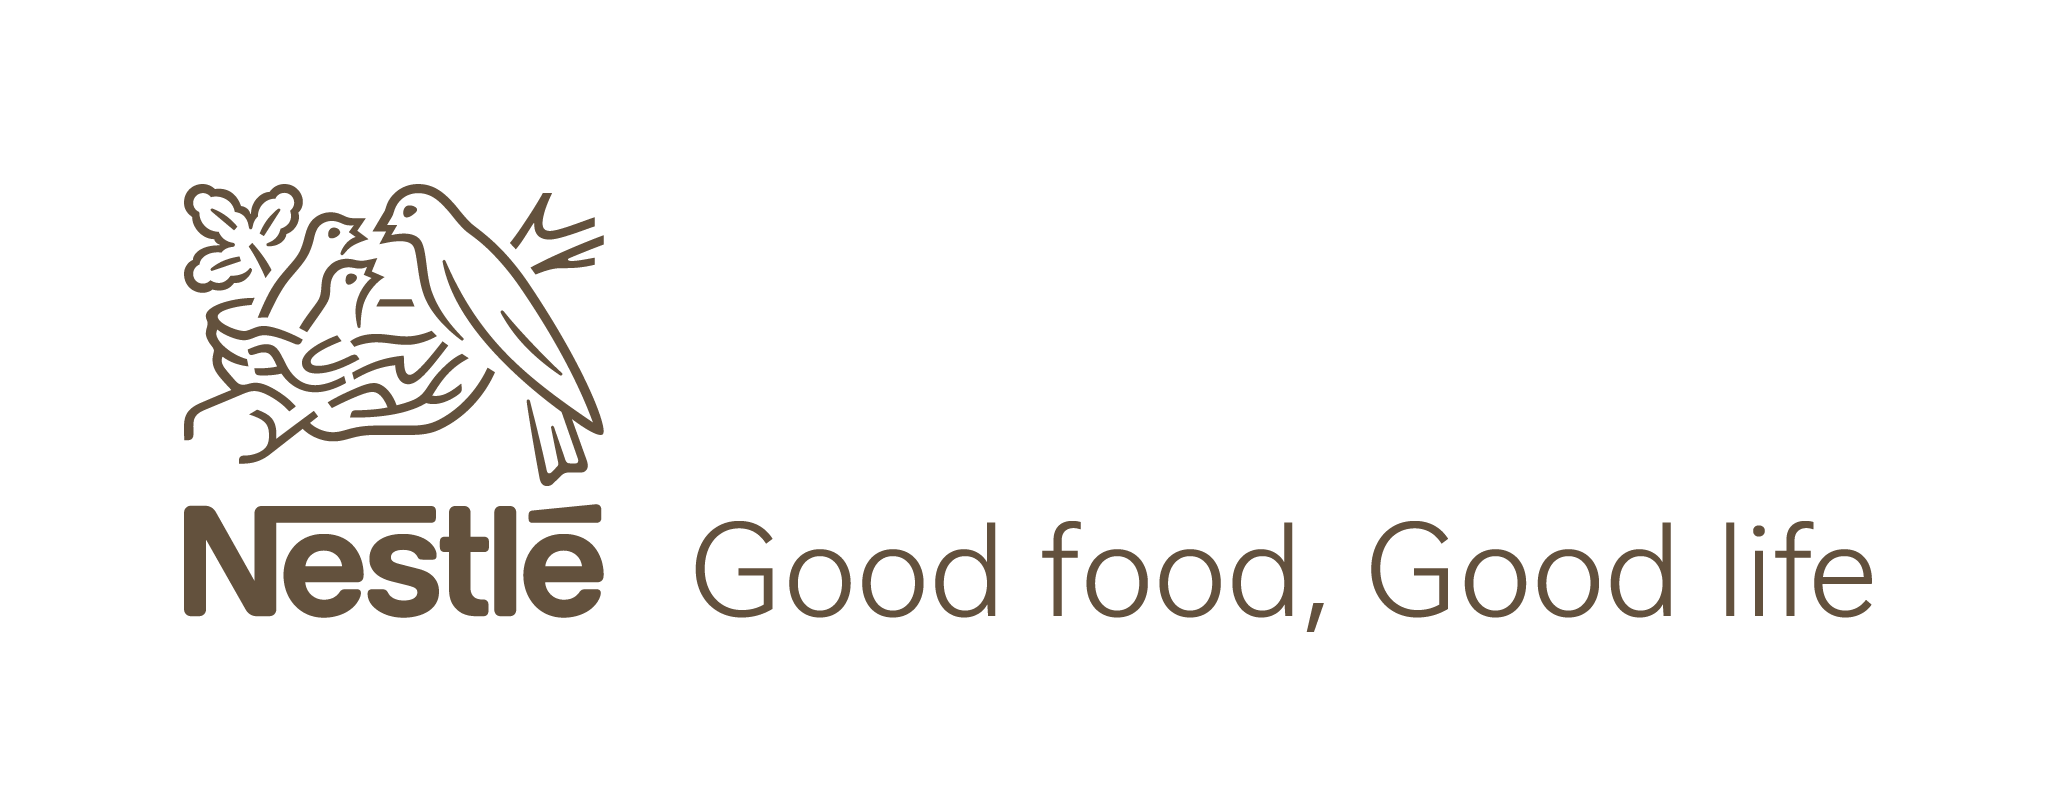 Logo Nestlé - membre fondateur d'AgroImpact pour la promotion de pratiques agricoles durables